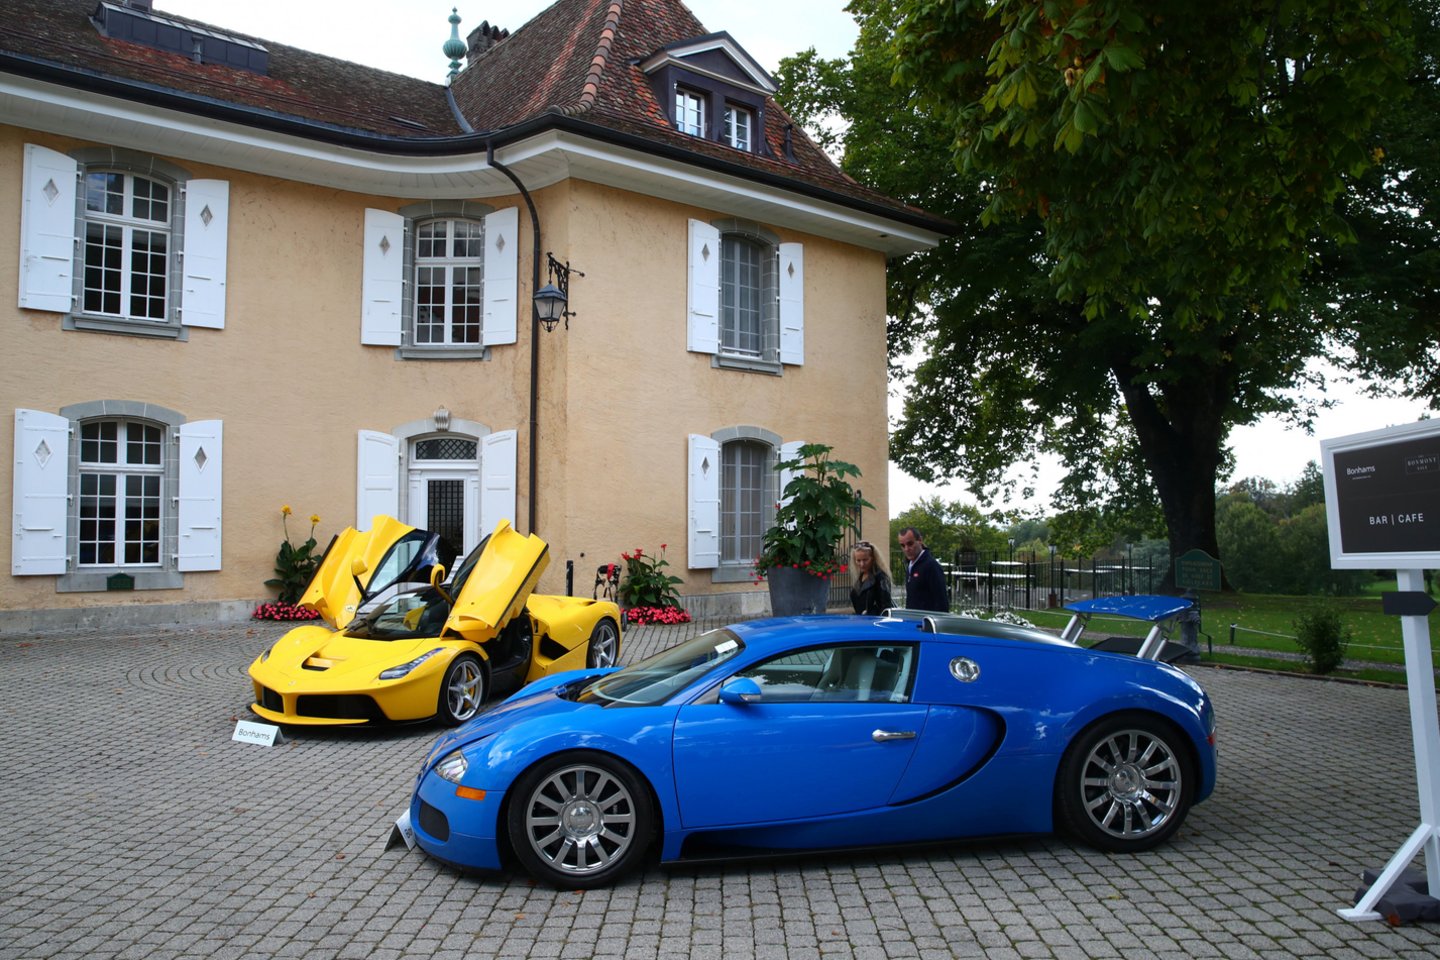 Per aukcioną pirkėjams siūlomi, be kita ko, septyni automobiliai „Ferrari“, trys „Lamborghini“, penki „Bentley“, vienas „Maserati“ ir vienas „McLaren“.<br>Reuters/Scanpix nuotr.